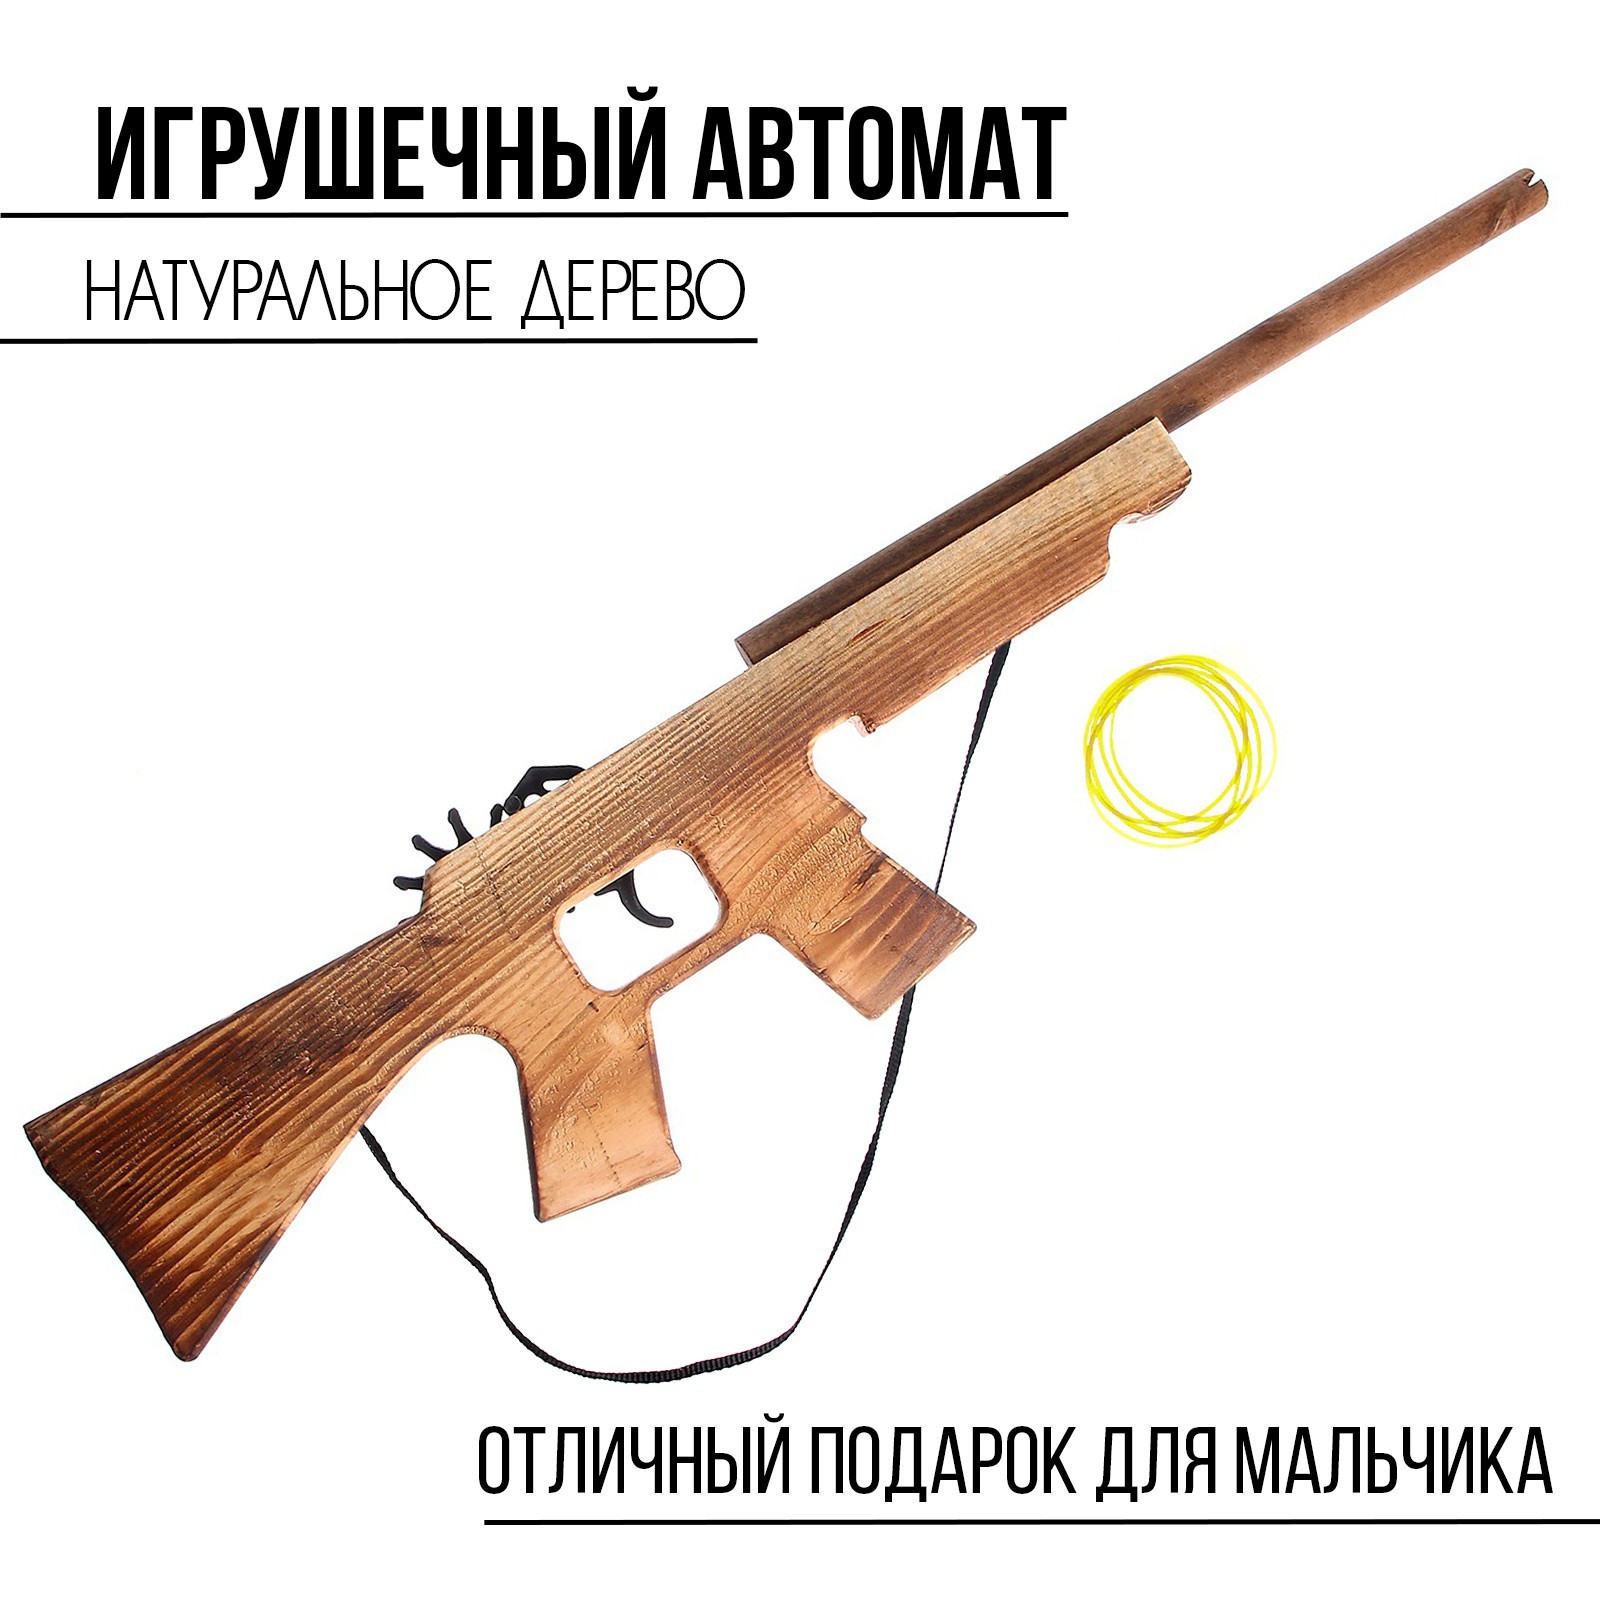 Детское ружье резинкострел деревянное 57 см